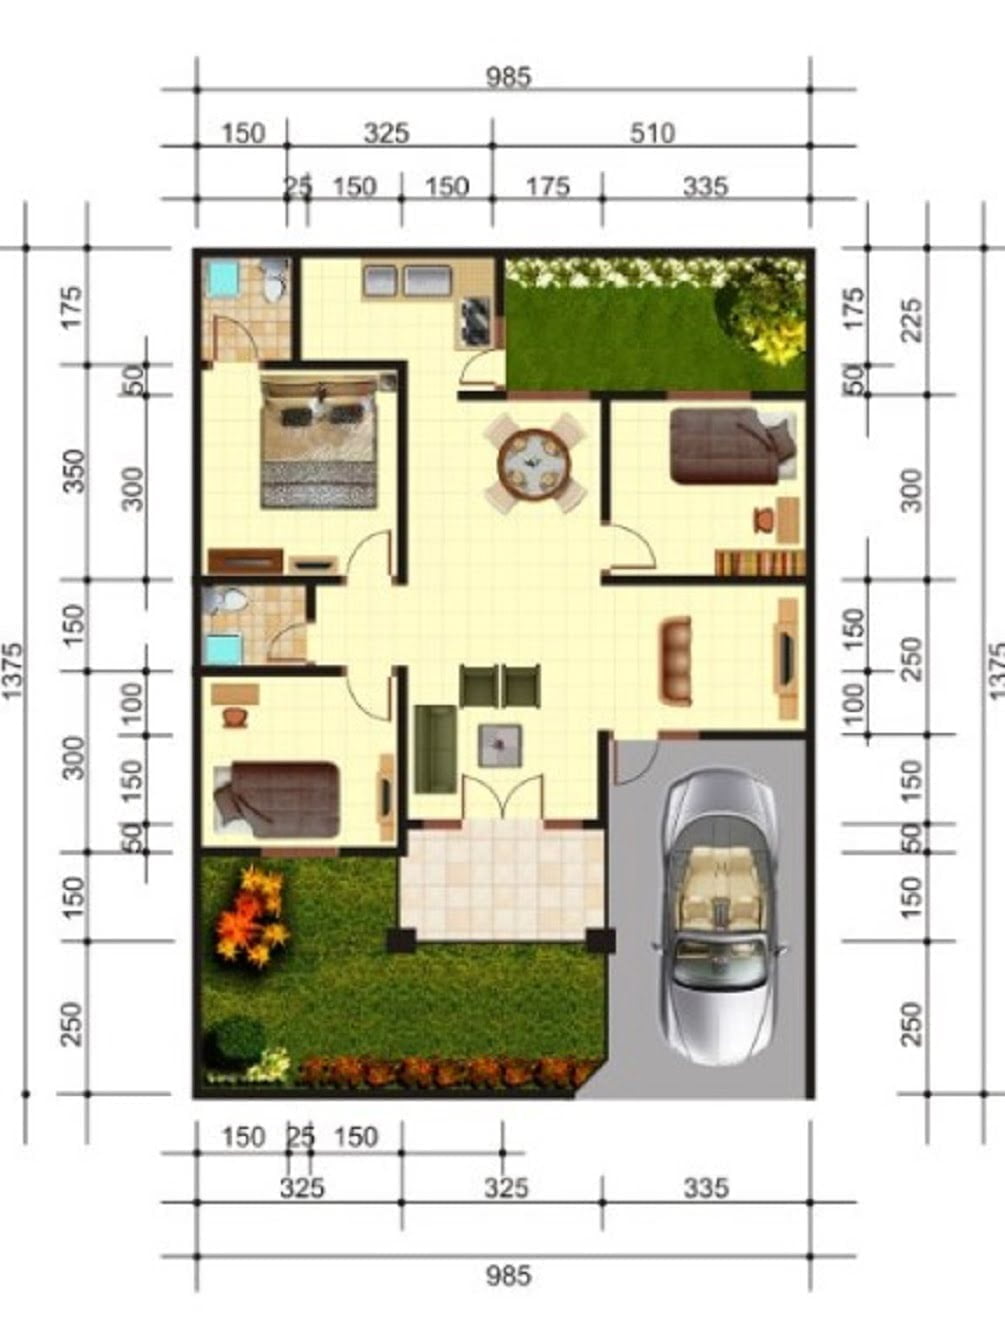 33 Ragam Desain Denah Rumah Minimalis 2 Kamar Tidur Ukuran 6X9 Paling Populer Di Dunia Deagam Design